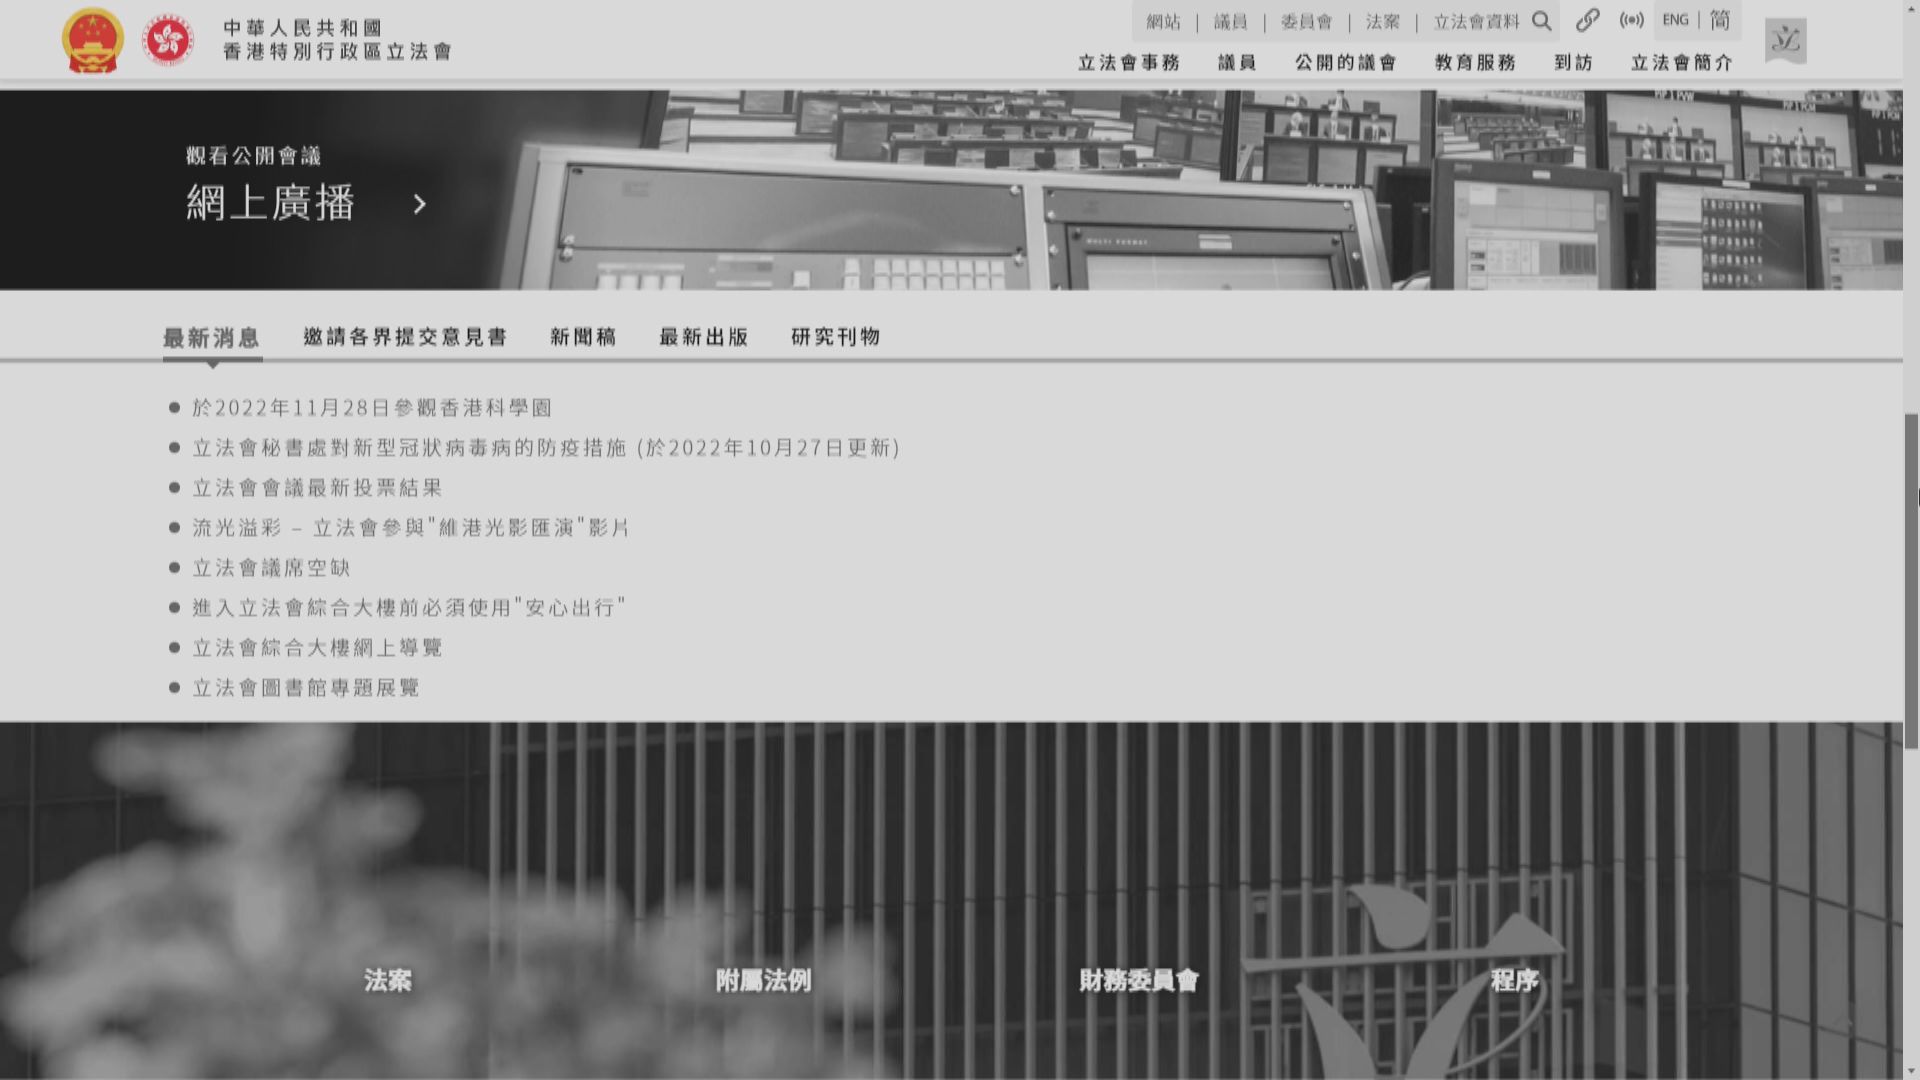 前特首董建華對江澤民逝世表示沉痛哀悼　政府網站轉為黑白色